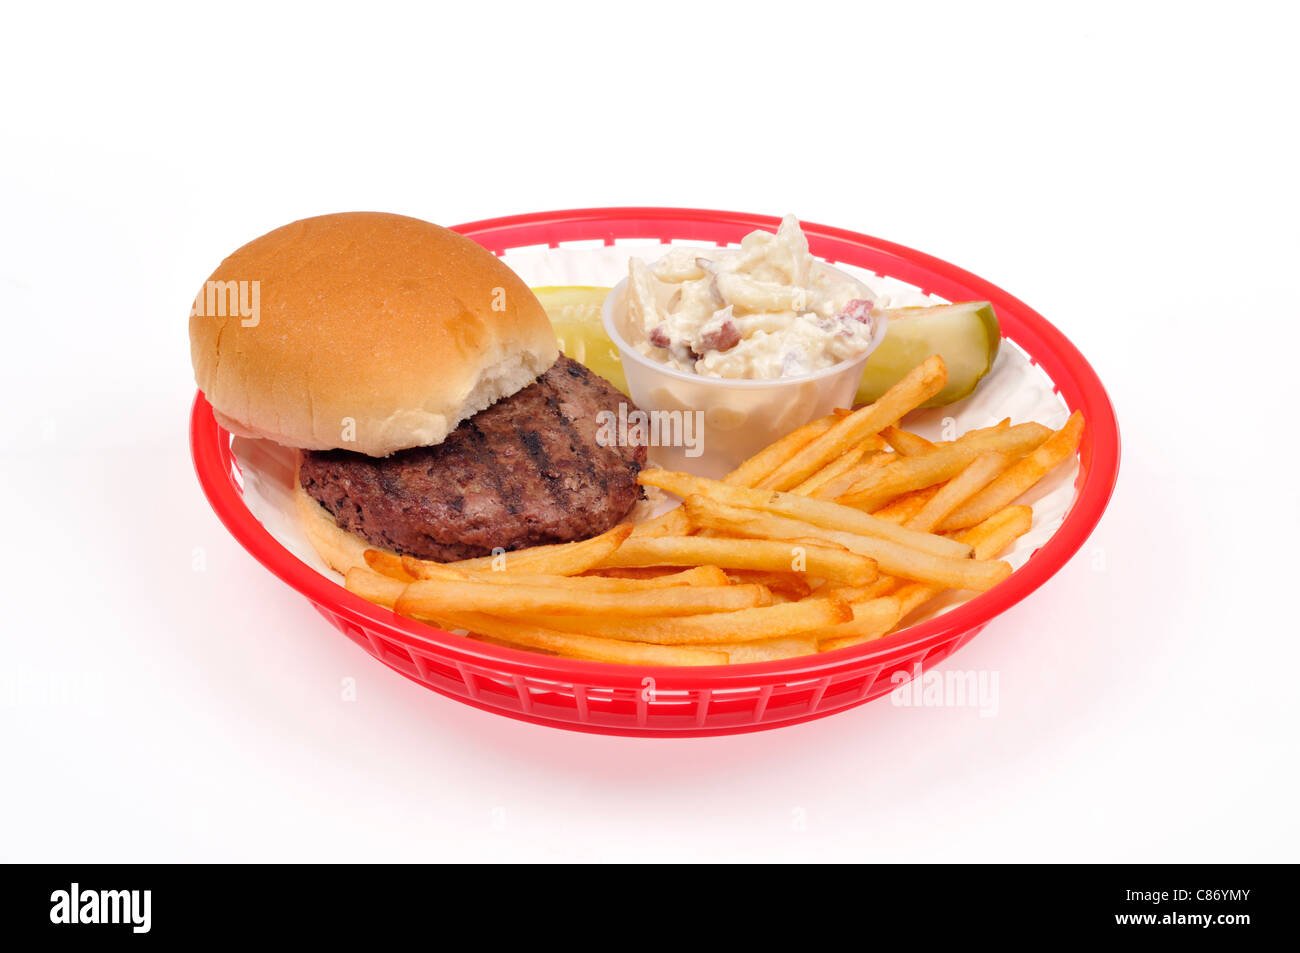 Sex boeuf grillé hamburger avec frites, salade de pommes de terre et cornichons en plastique rouge Panier à emporter sur fond blanc, découpe. USA Banque D'Images